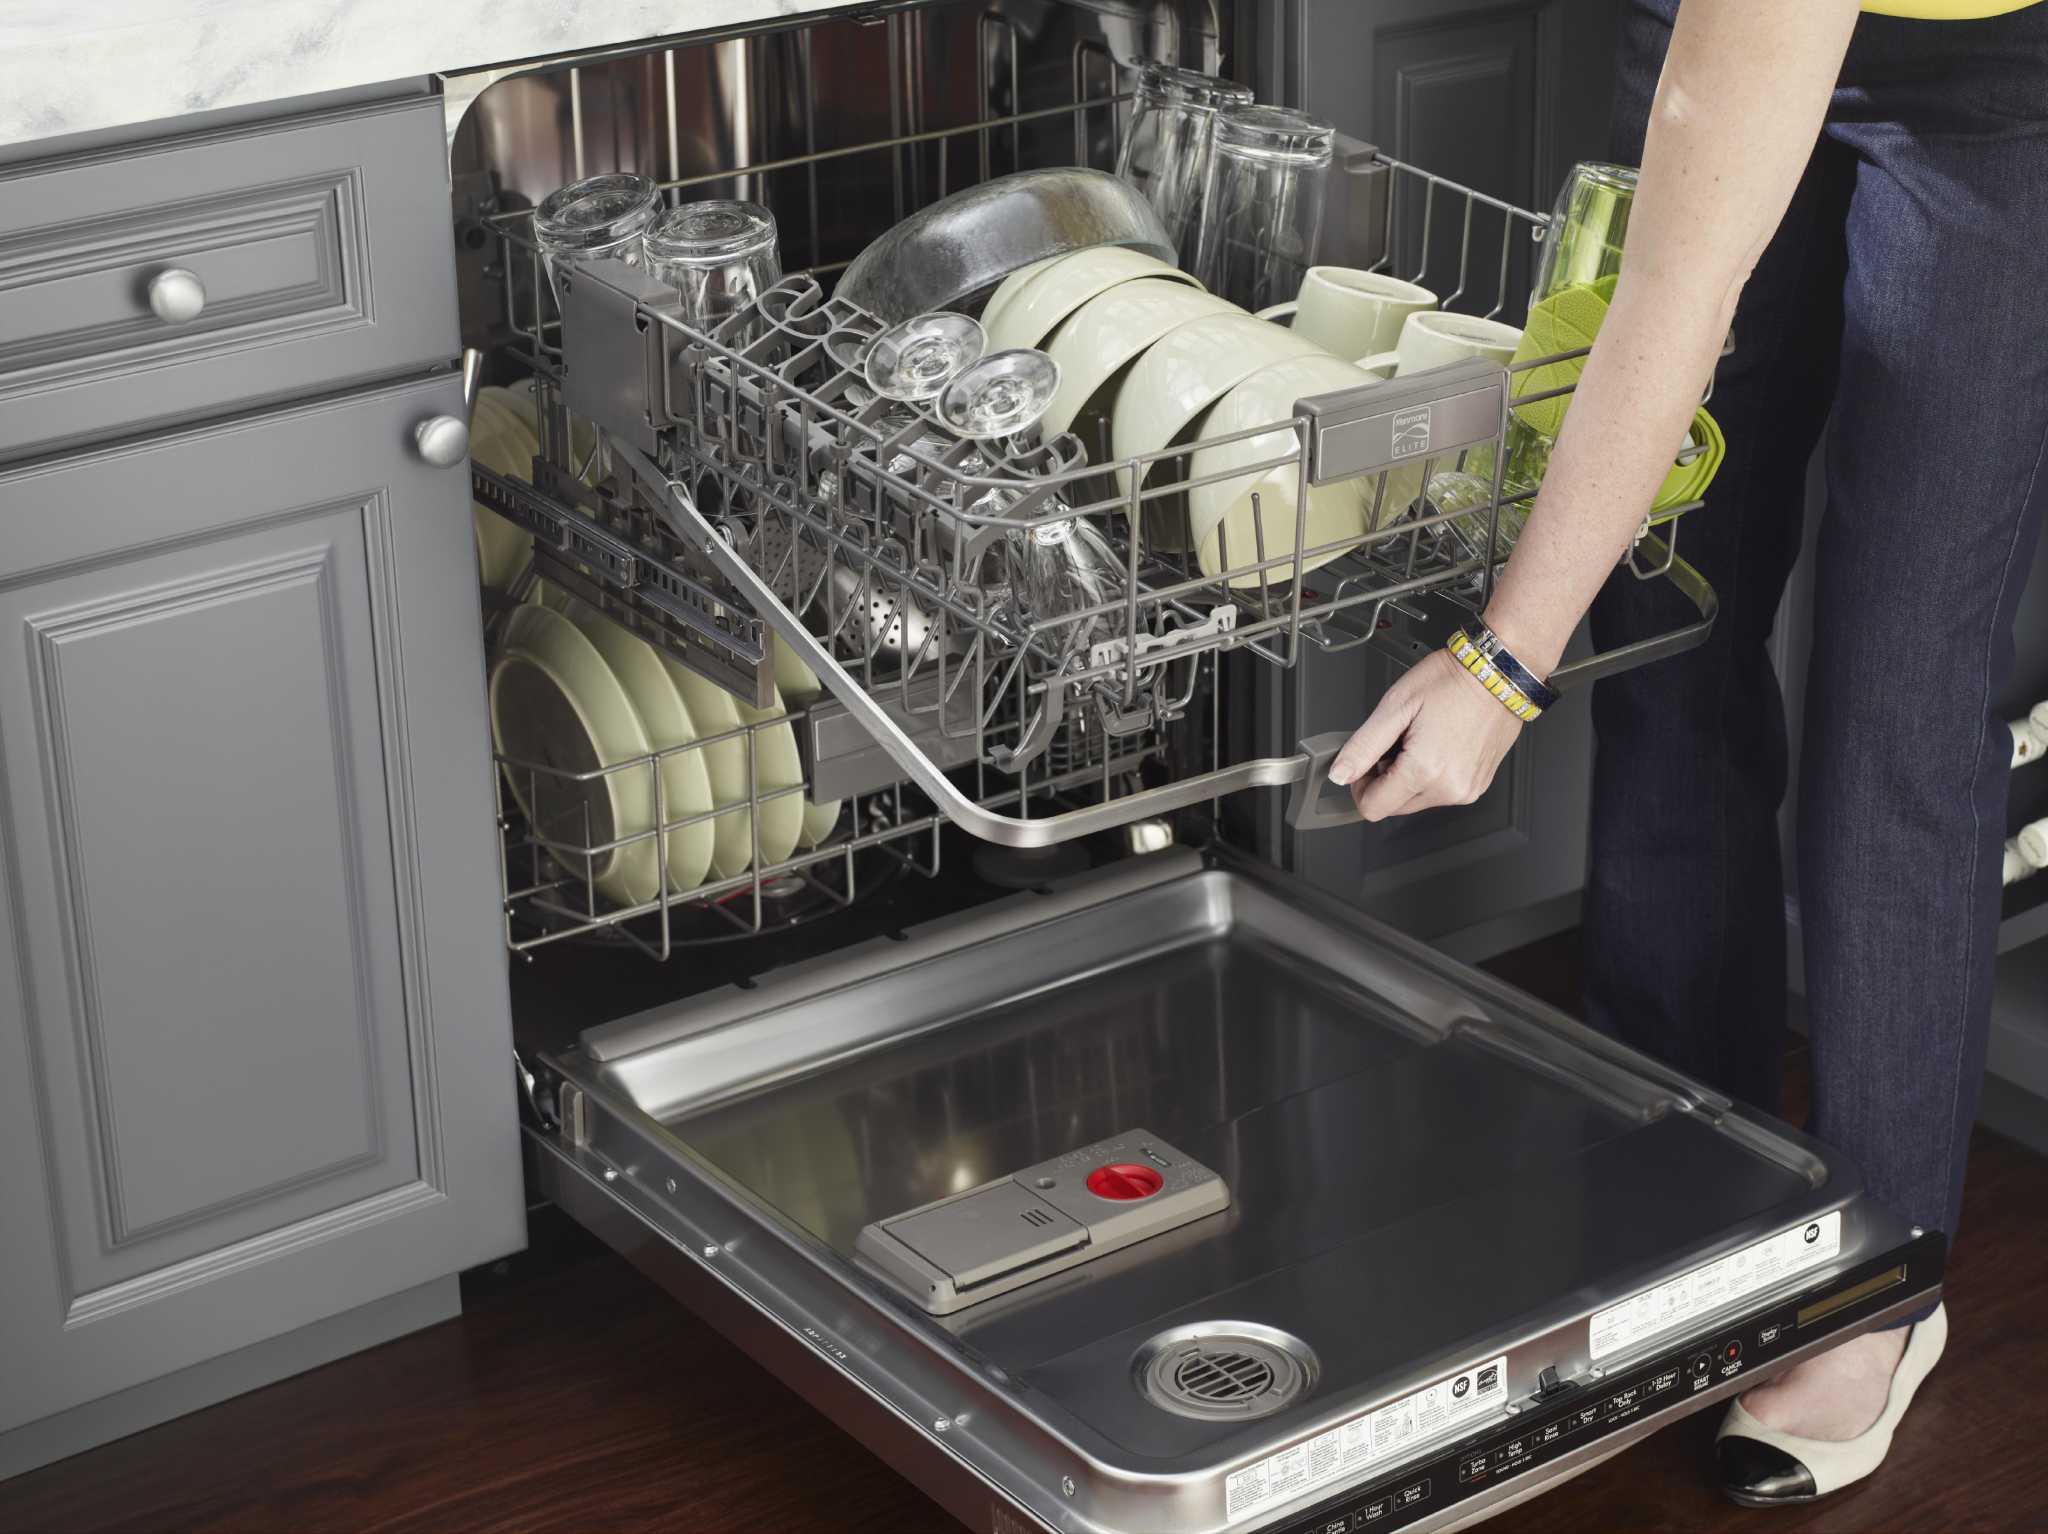 Сборка посудомоечной машины. Посуда в посудомойке. Укладка посуды в посудомоечной машине. Расположение посуды в посудомоечной. Загрузка посуды в посудомоечную машину.